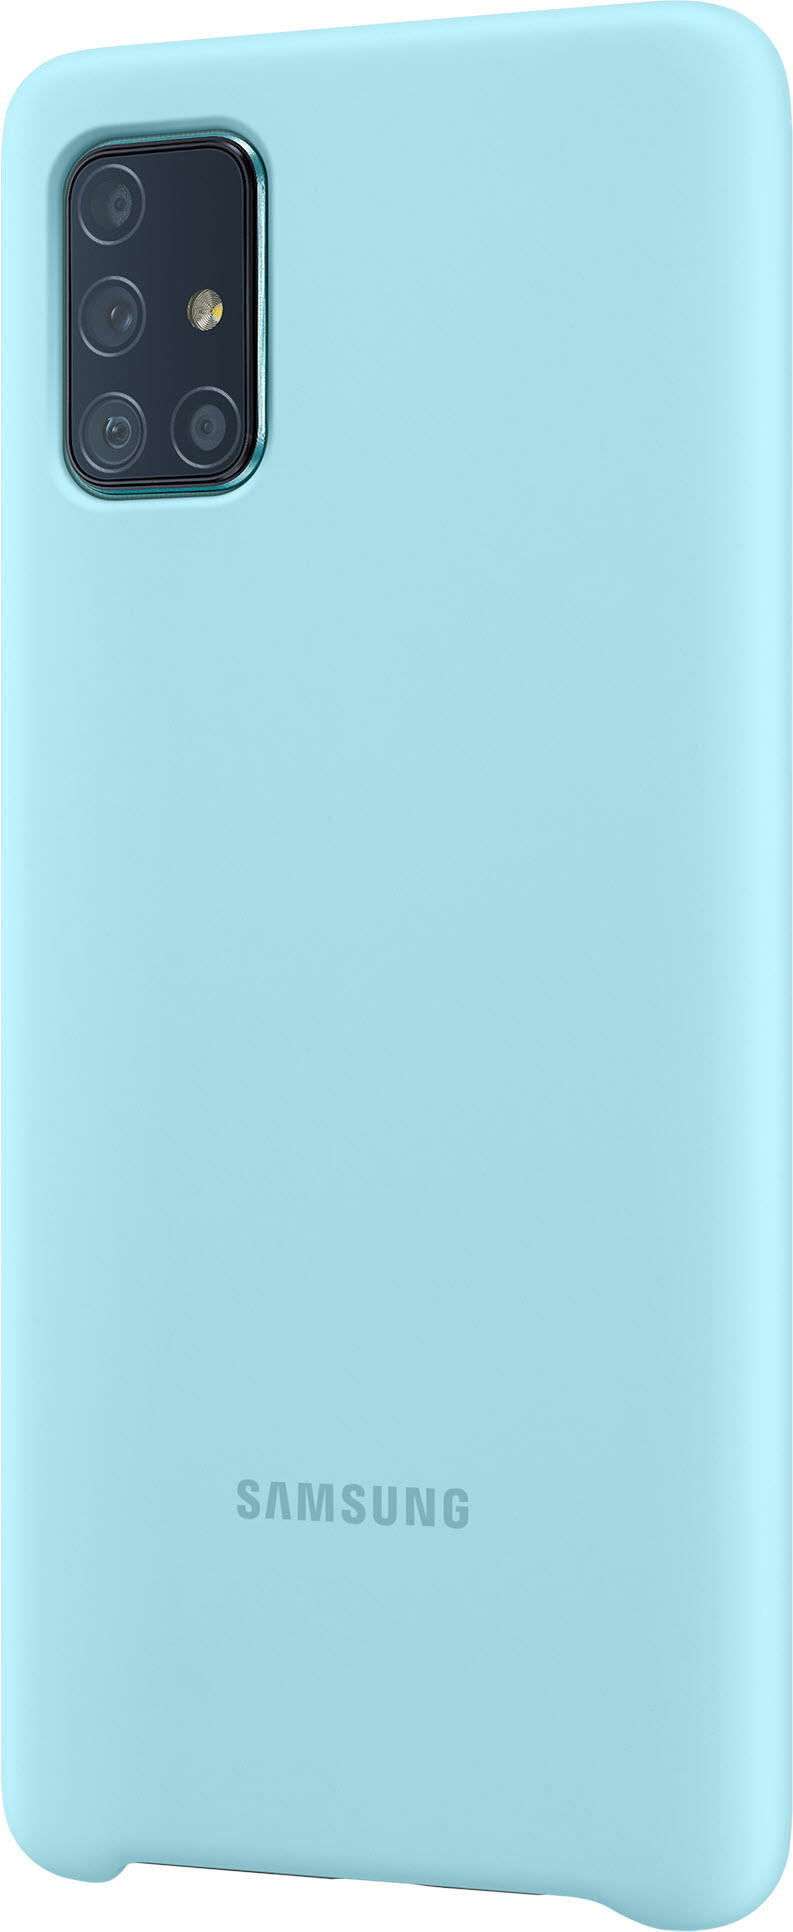 SAMSUNG EF-PA715, Backcover, Samsung, Galaxy A71, Blau